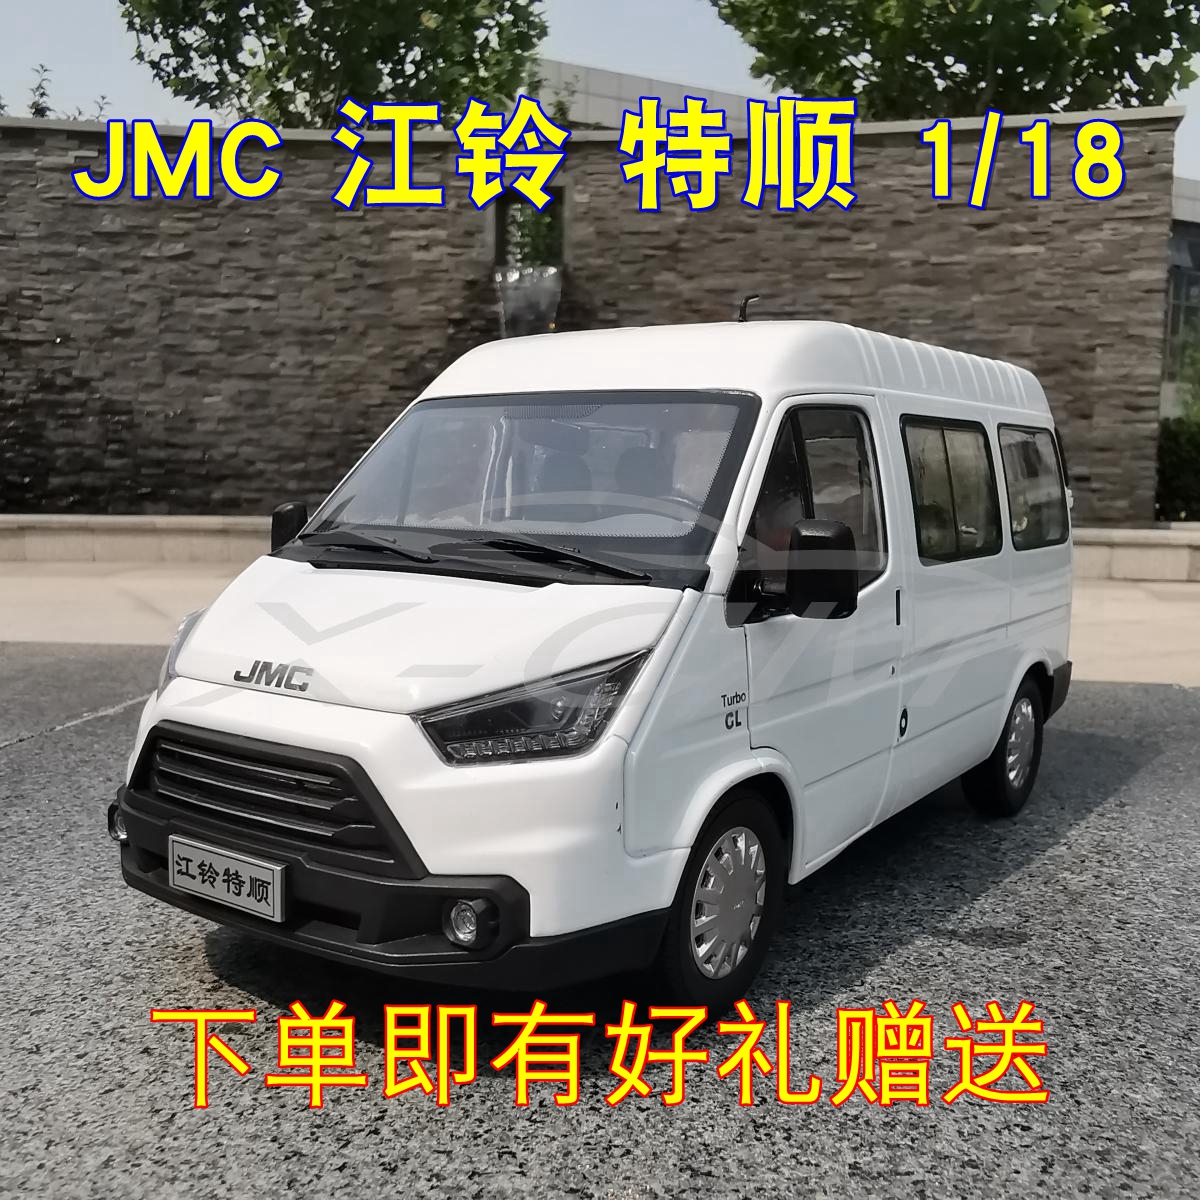 江铃特顺车模 1:18 江铃汽车原厂 特顺n520 jmc 商务车面包车模型